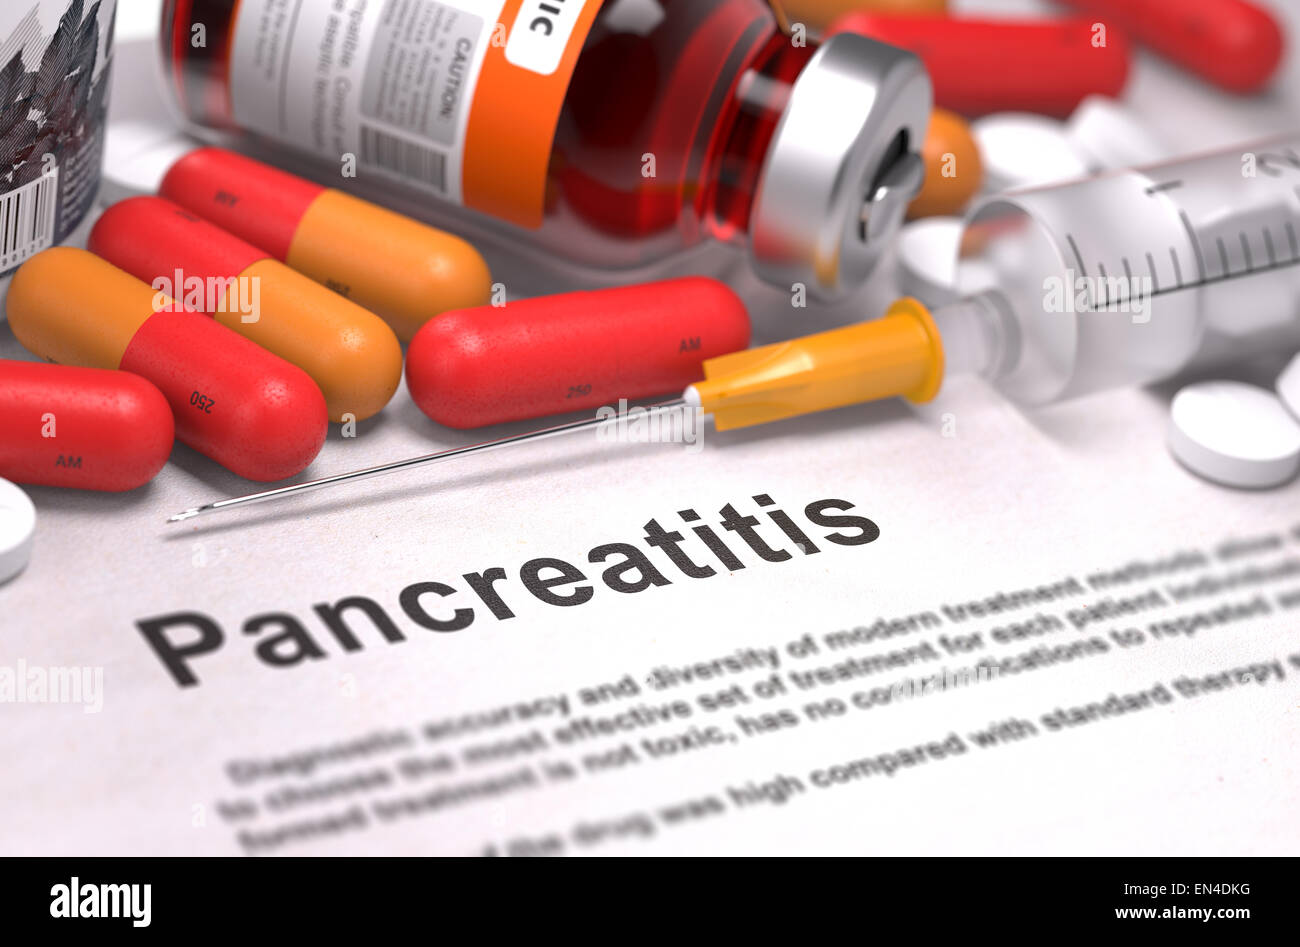 Diagnosi di pancreatite. Concetto medico. Foto Stock